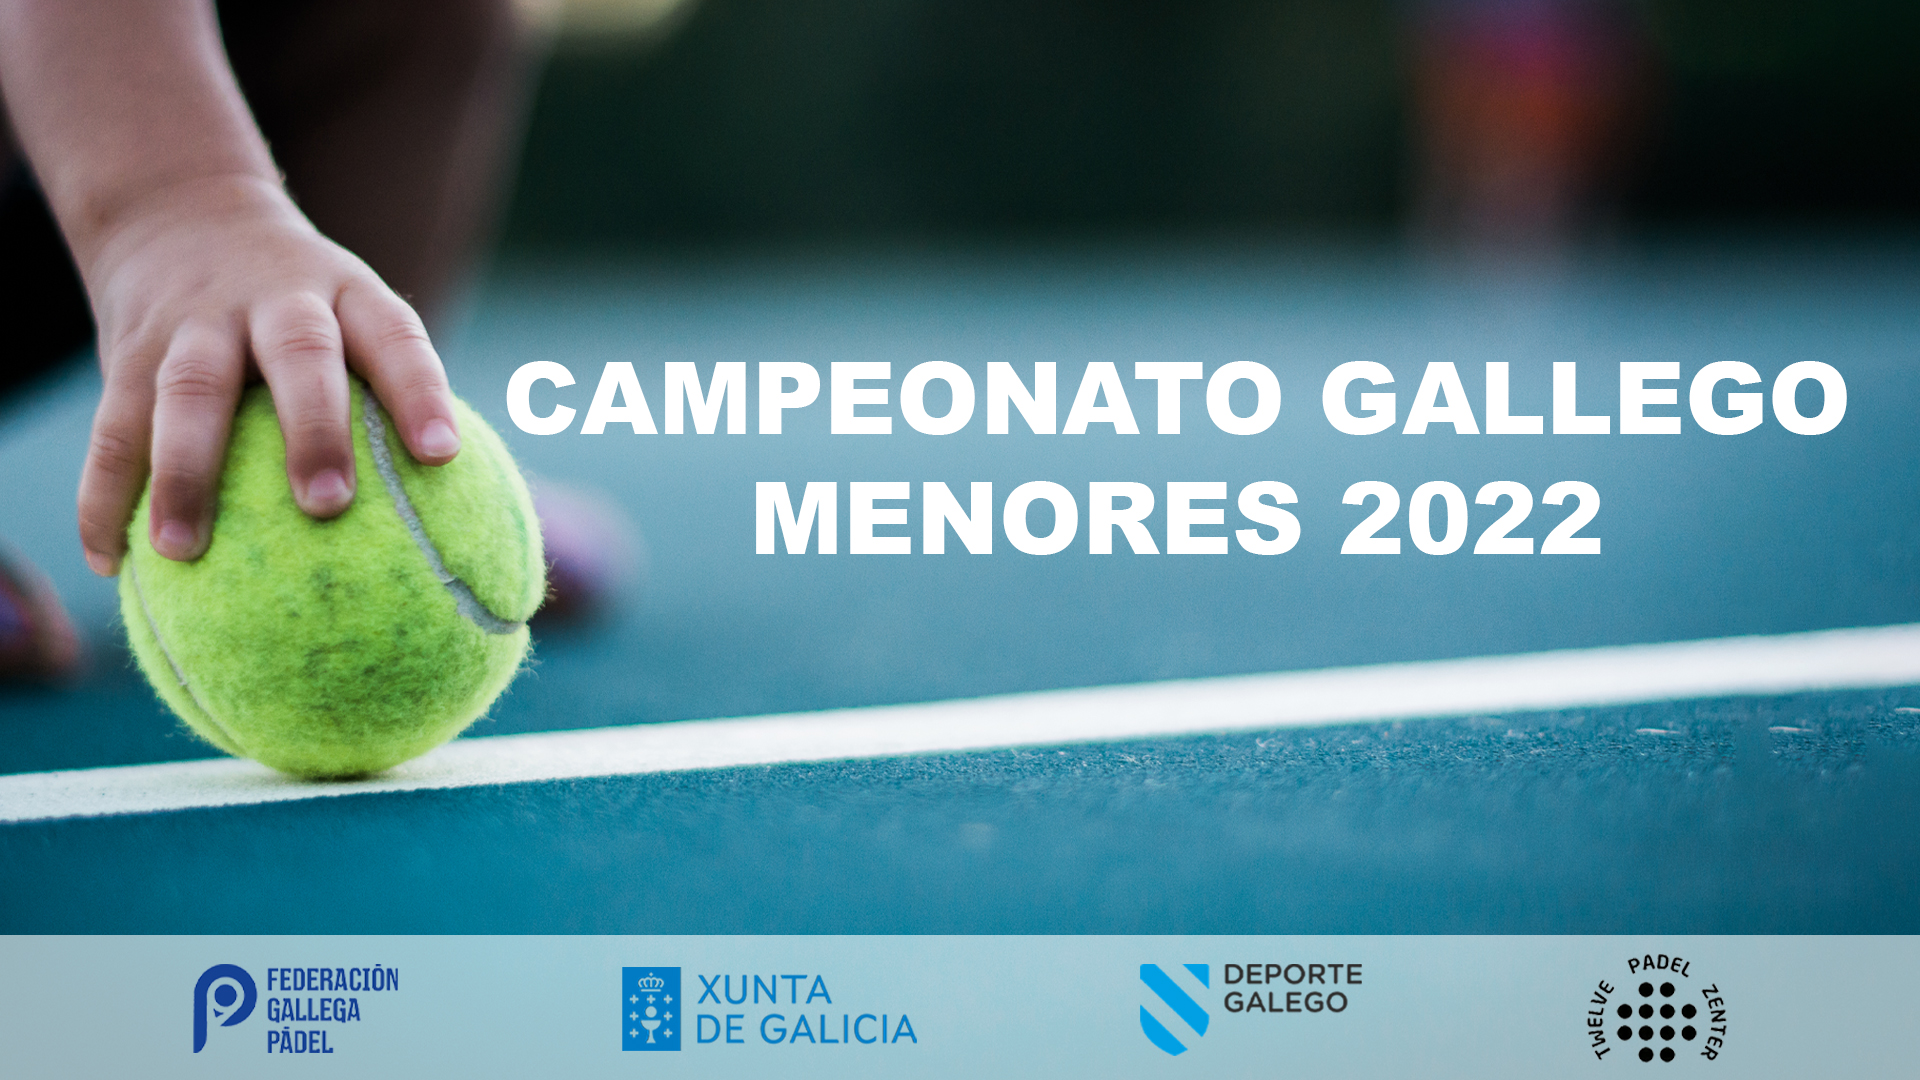 Campeonato Gallego Menores 2022